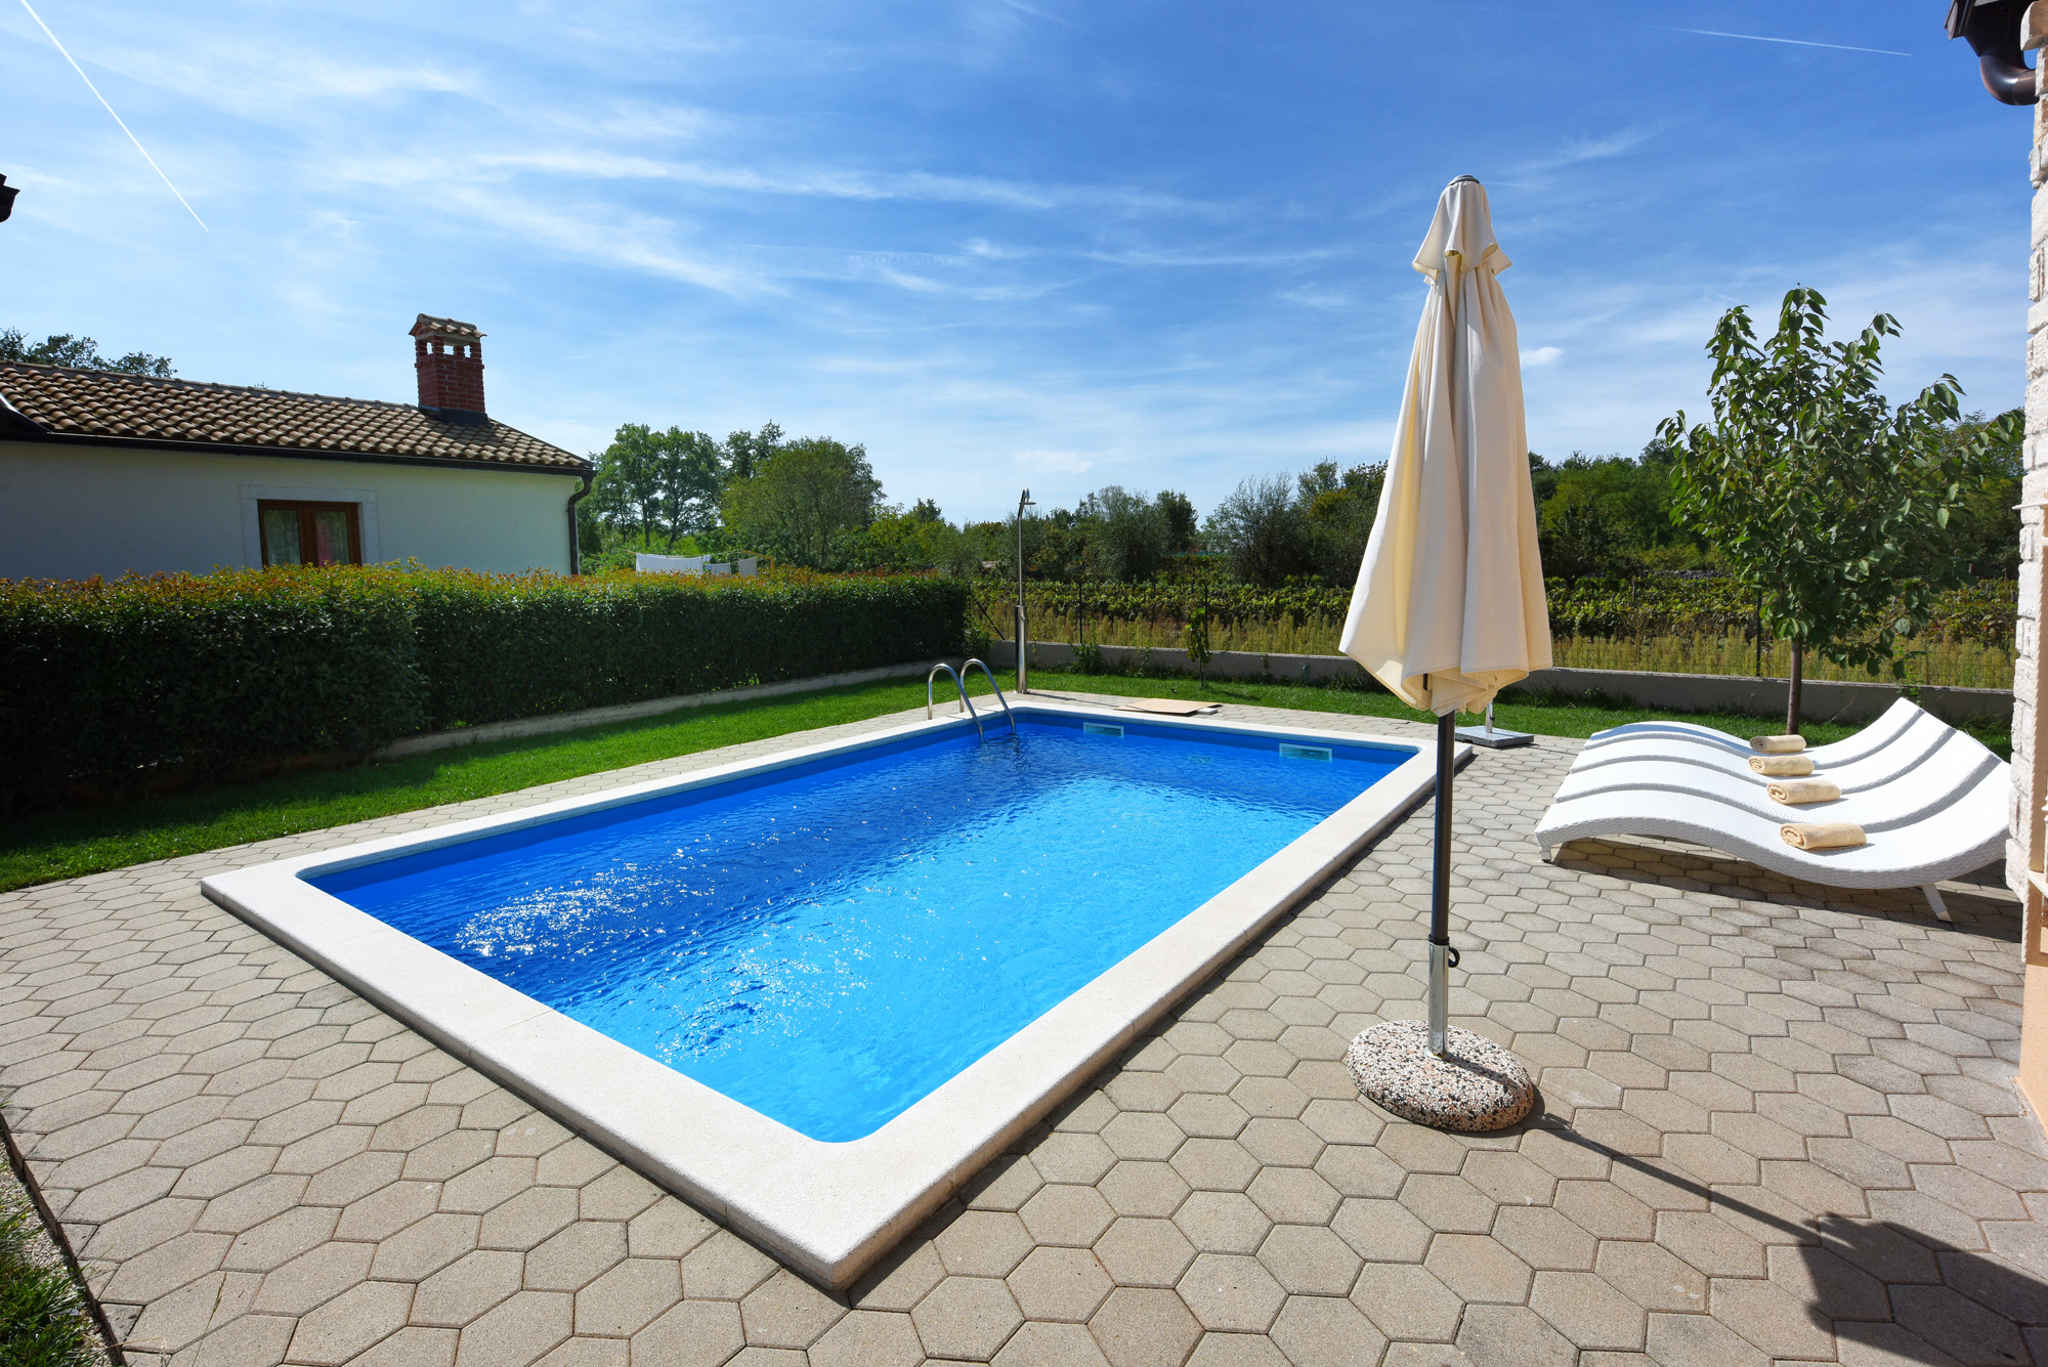 Villa mit Swimmingpool und Grillplatz Ferienhaus in Kroatien